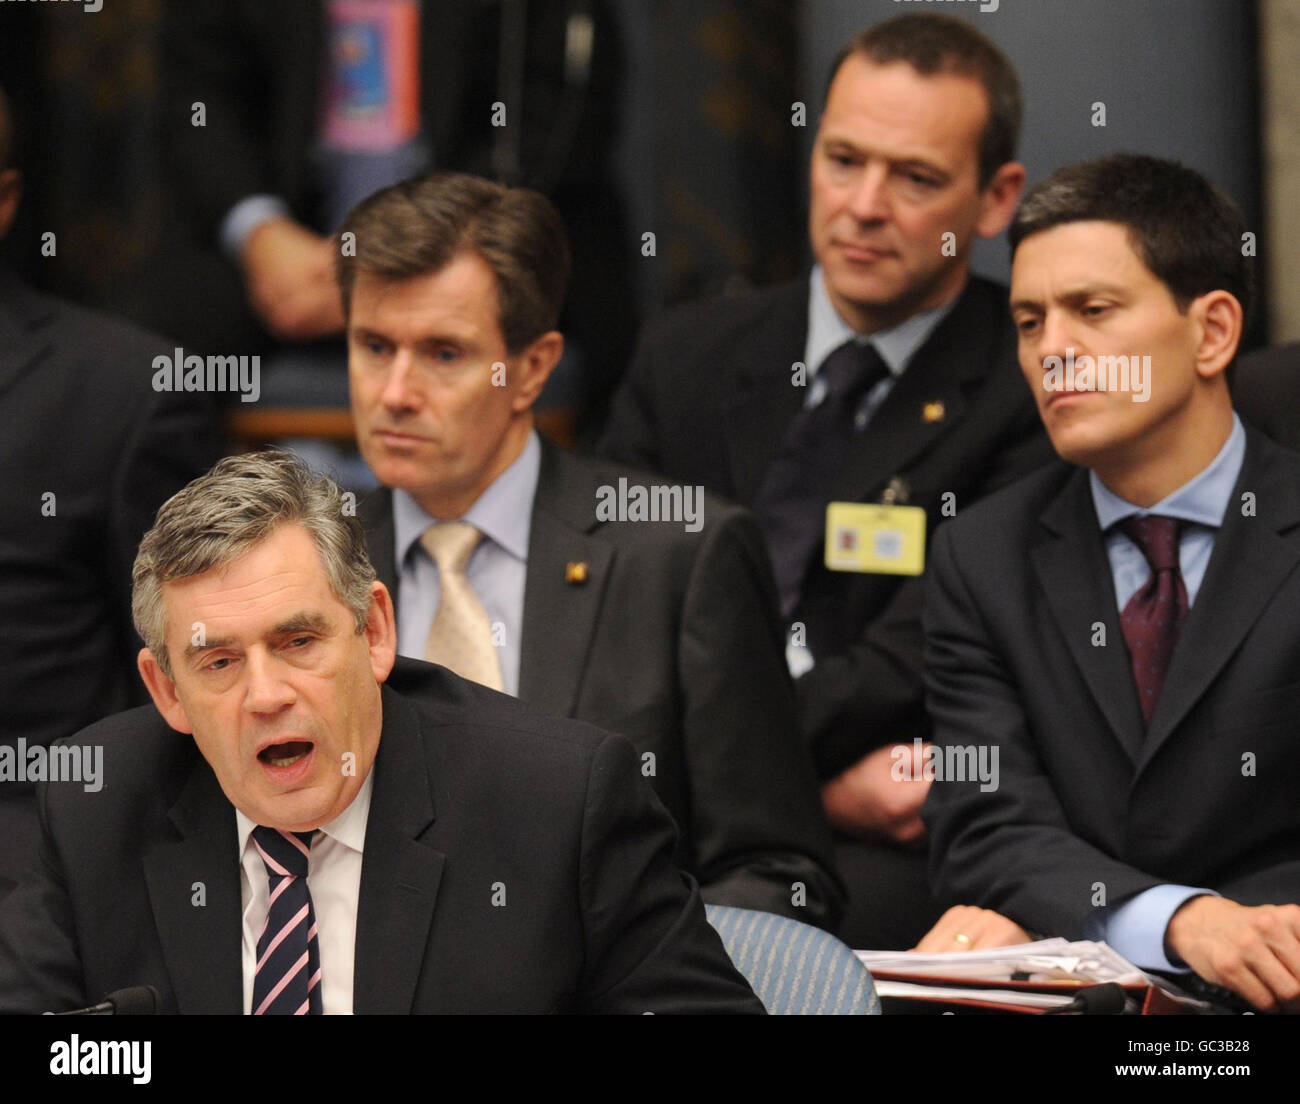 Il primo ministro britannico Gordon Brown parla al Consiglio di sicurezza delle Nazioni Unite a New York, mentre il ministro degli Esteri britannico David Miliband ascolta in background. Foto Stock